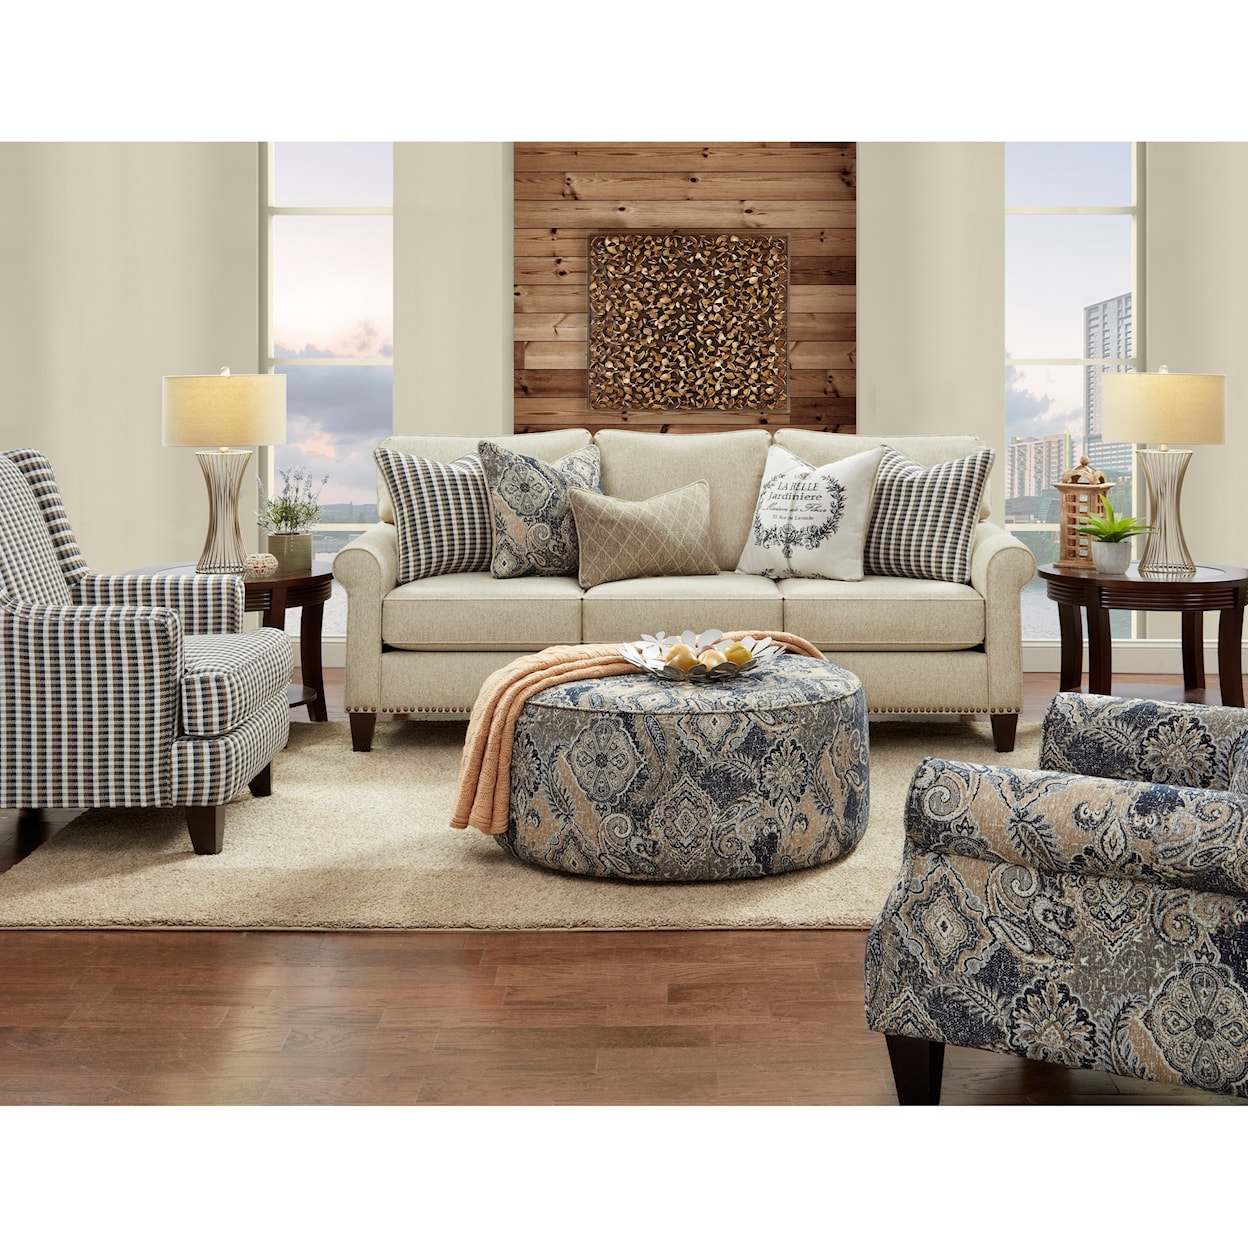 Fusion Furniture 47-00KP TRUTH OR DARE SPICE (REVOLUTION) Sofa